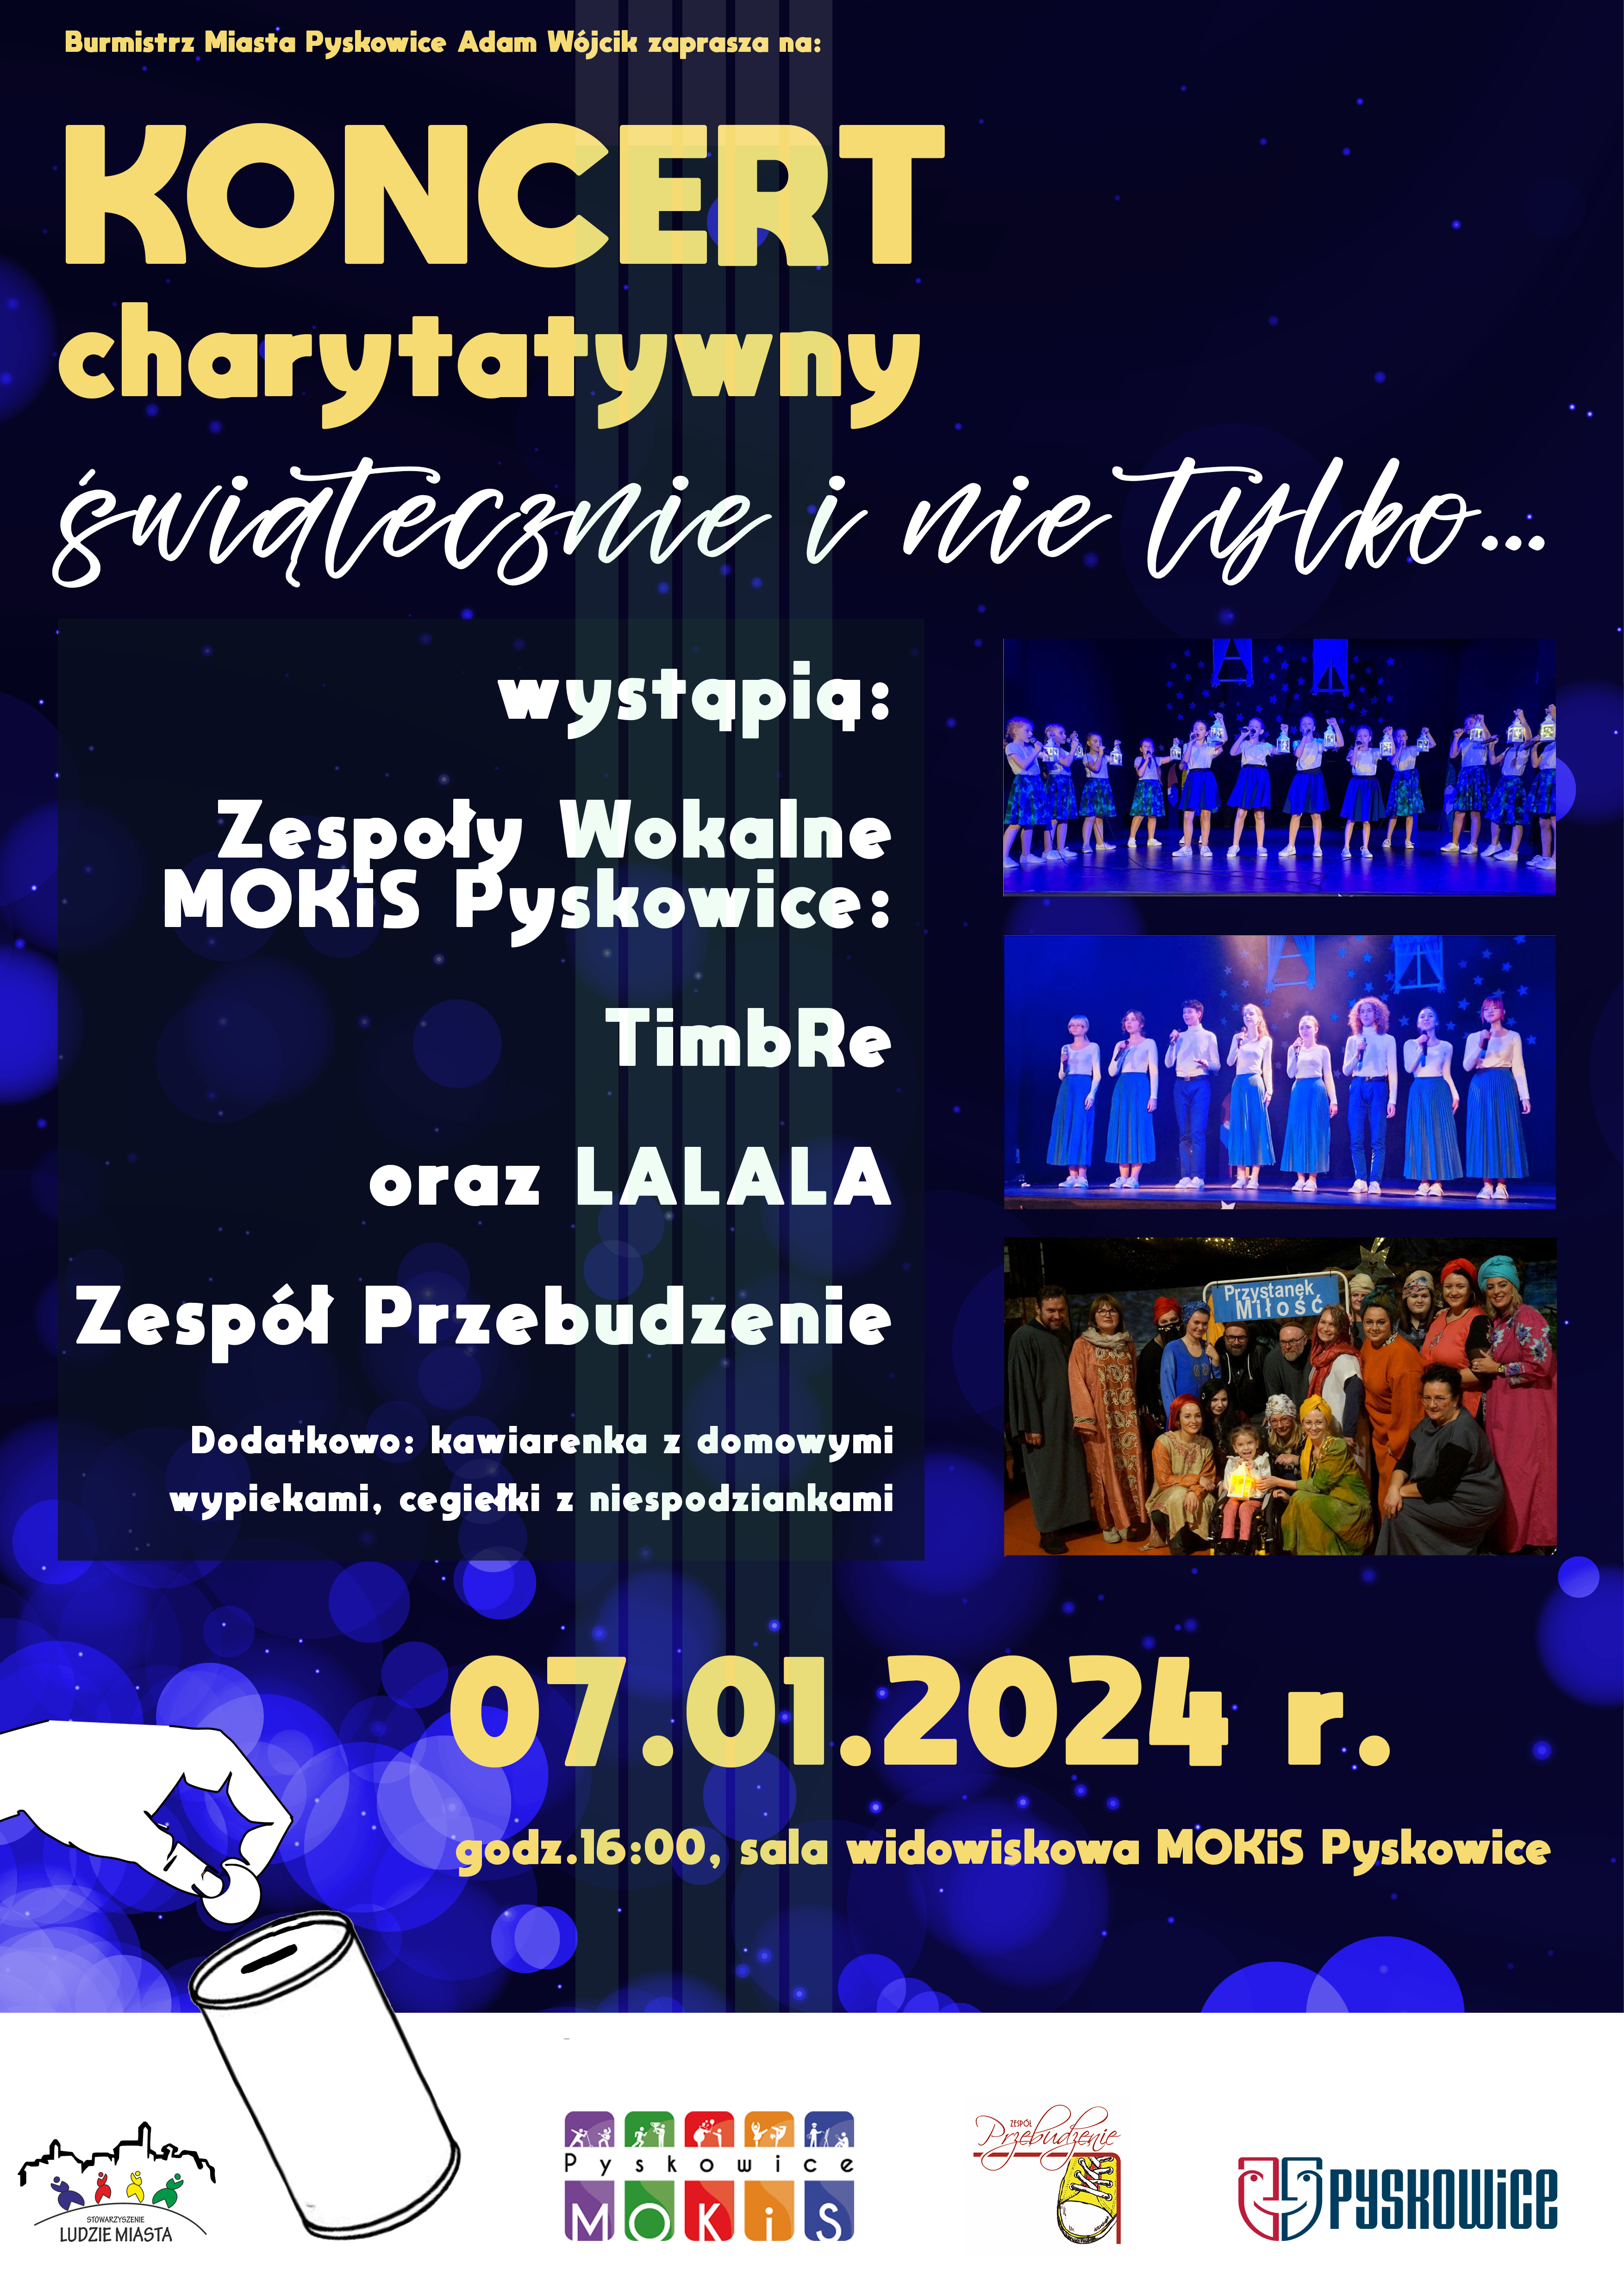 Plakat promujący koncert charytatywny w MOKiS Pyskowice